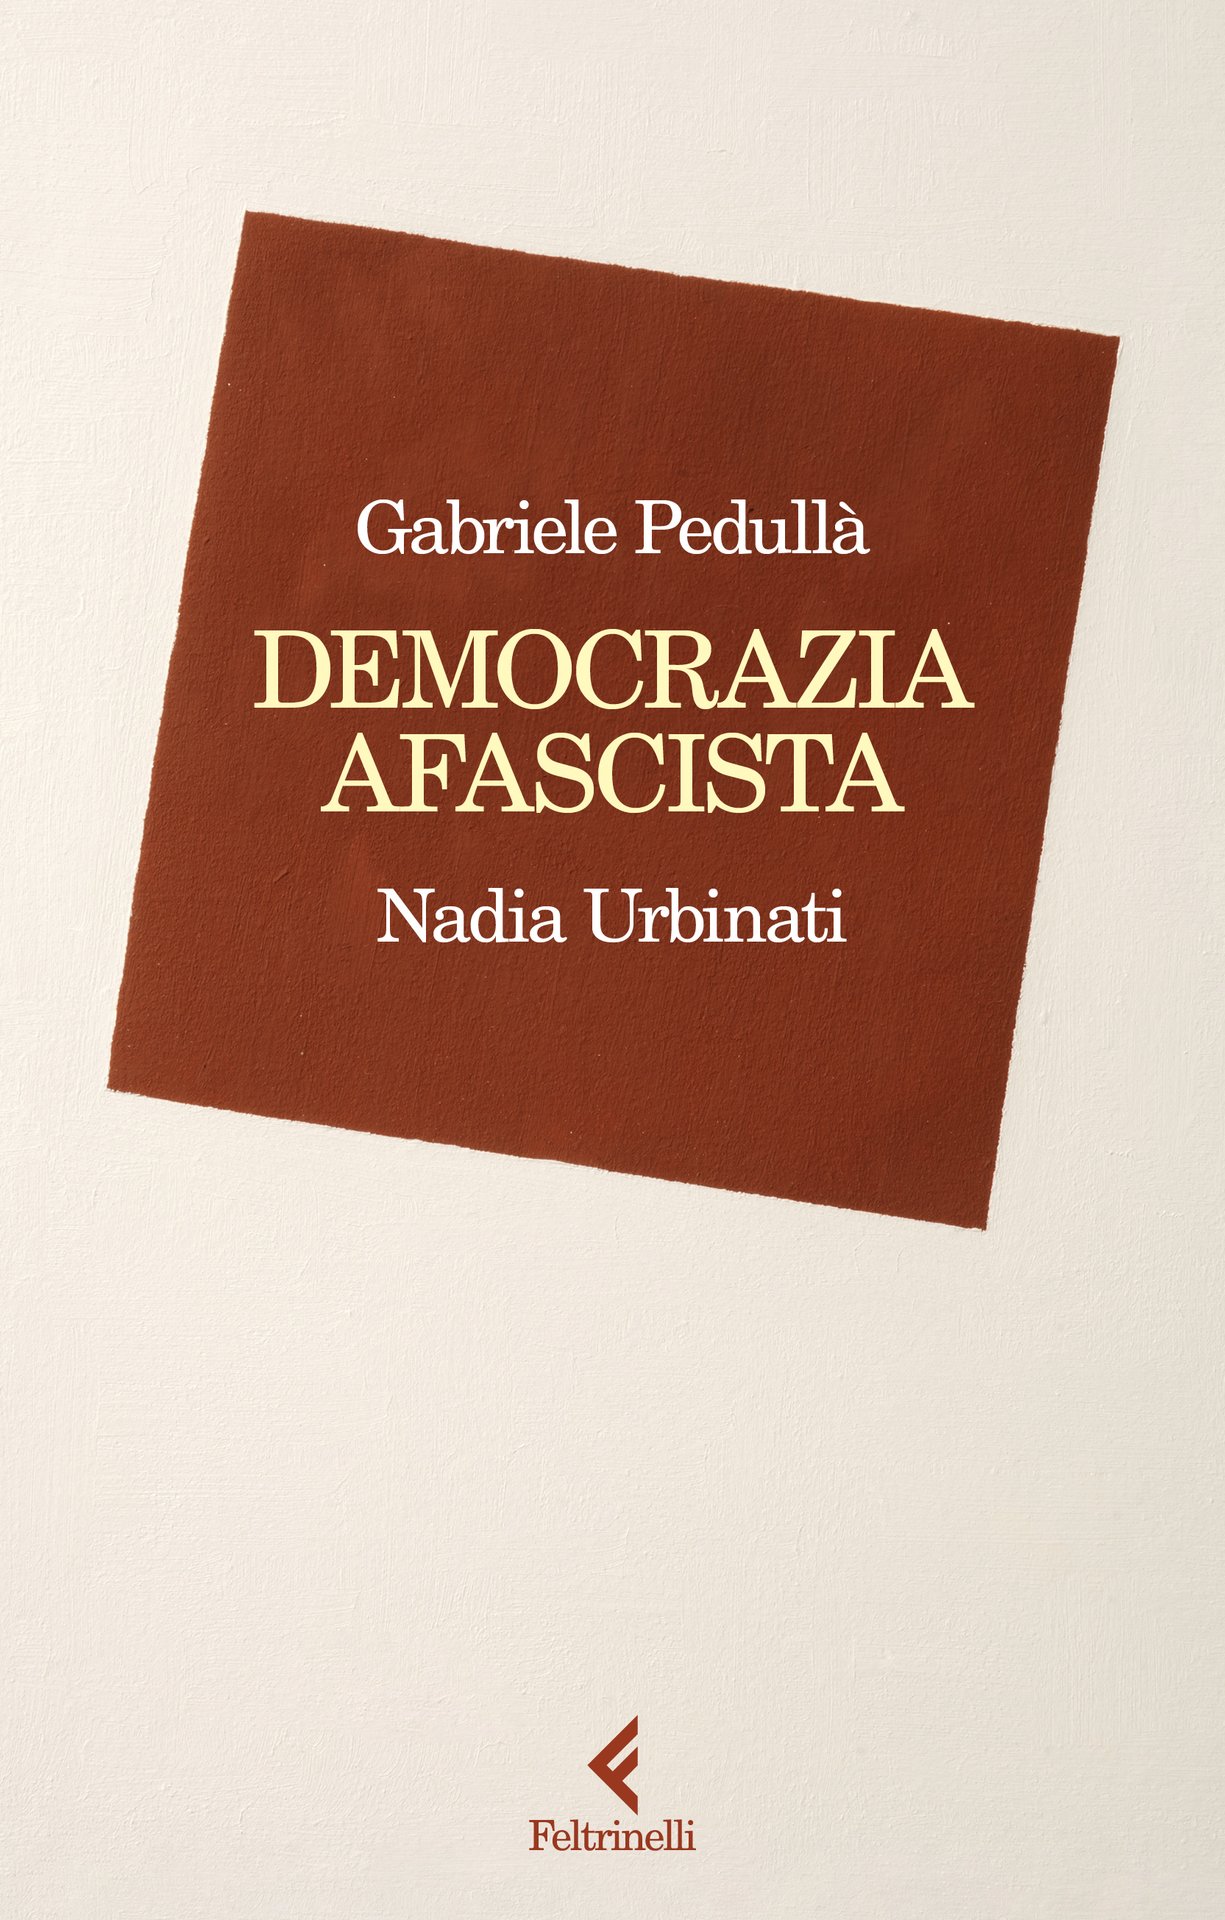 Nadia Urbinati e Gabriele Pedullà presentano "Democrazia afascista" in Fondazione Feltrinelli